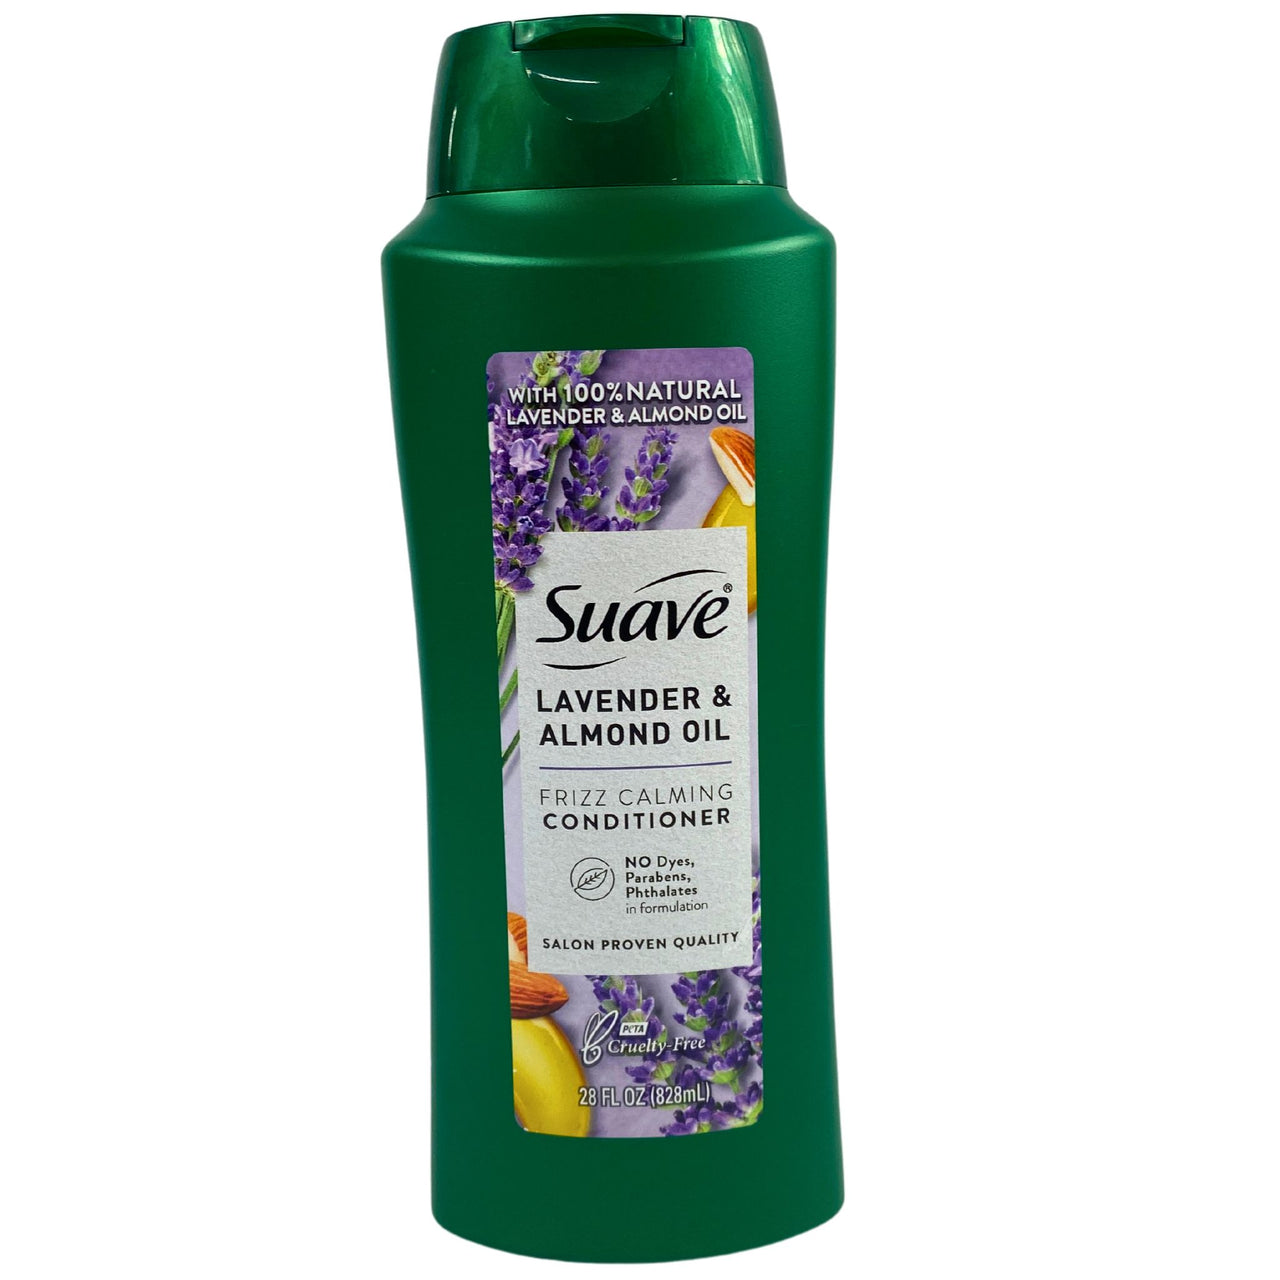 Suave Lavender & Almond Oil frizz Calming Conditioner